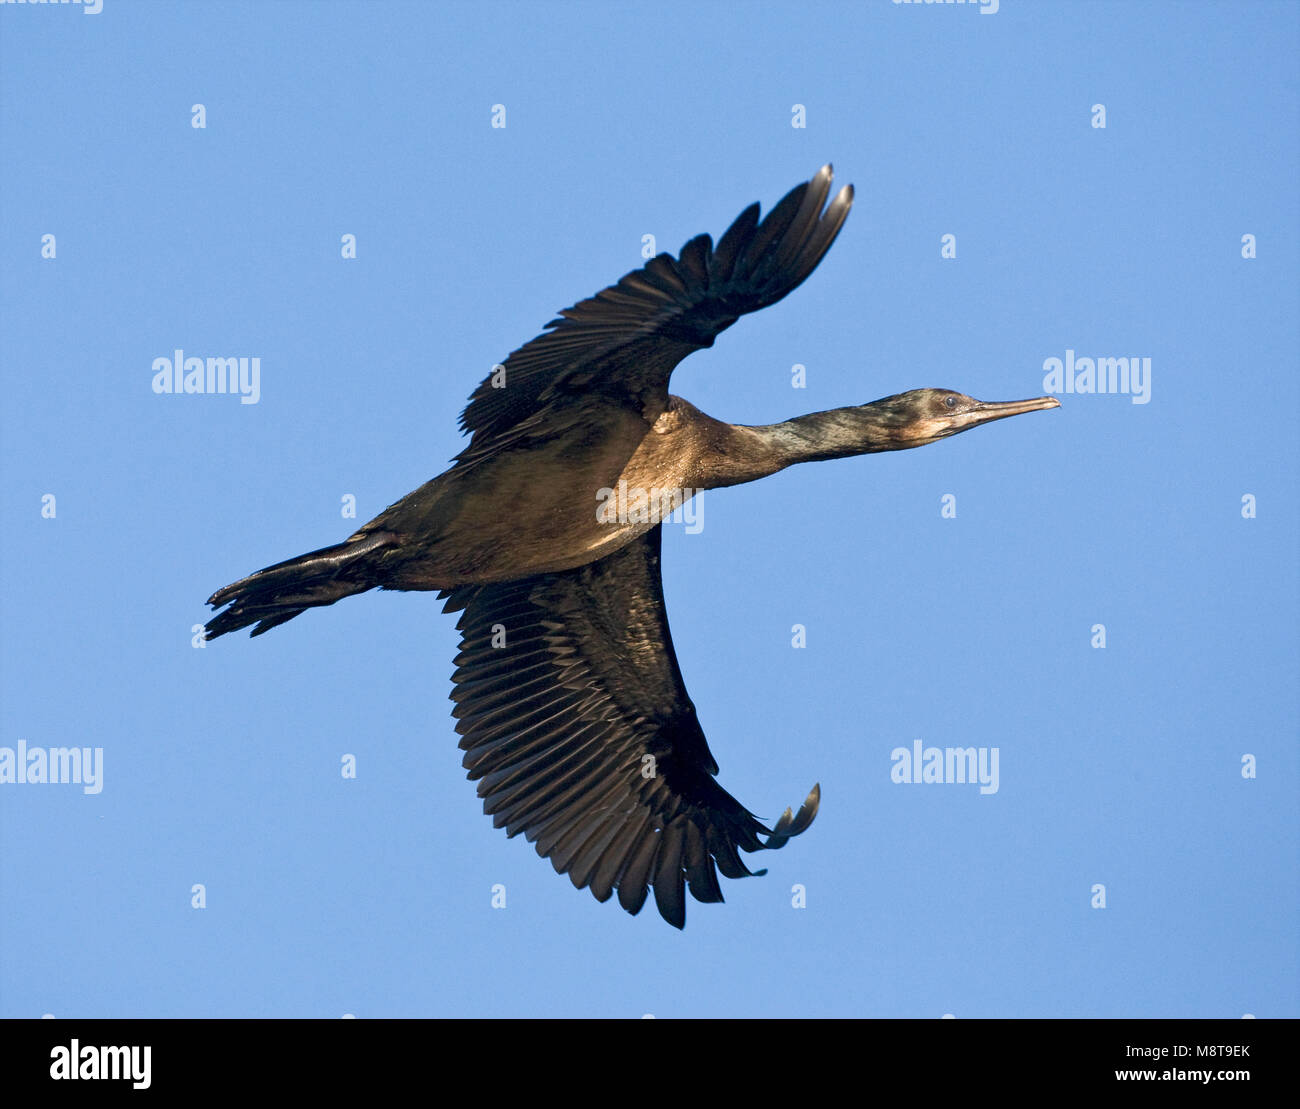 Brandt-aalscholver vliegend; Brandts Cormorant flying Stock Photo